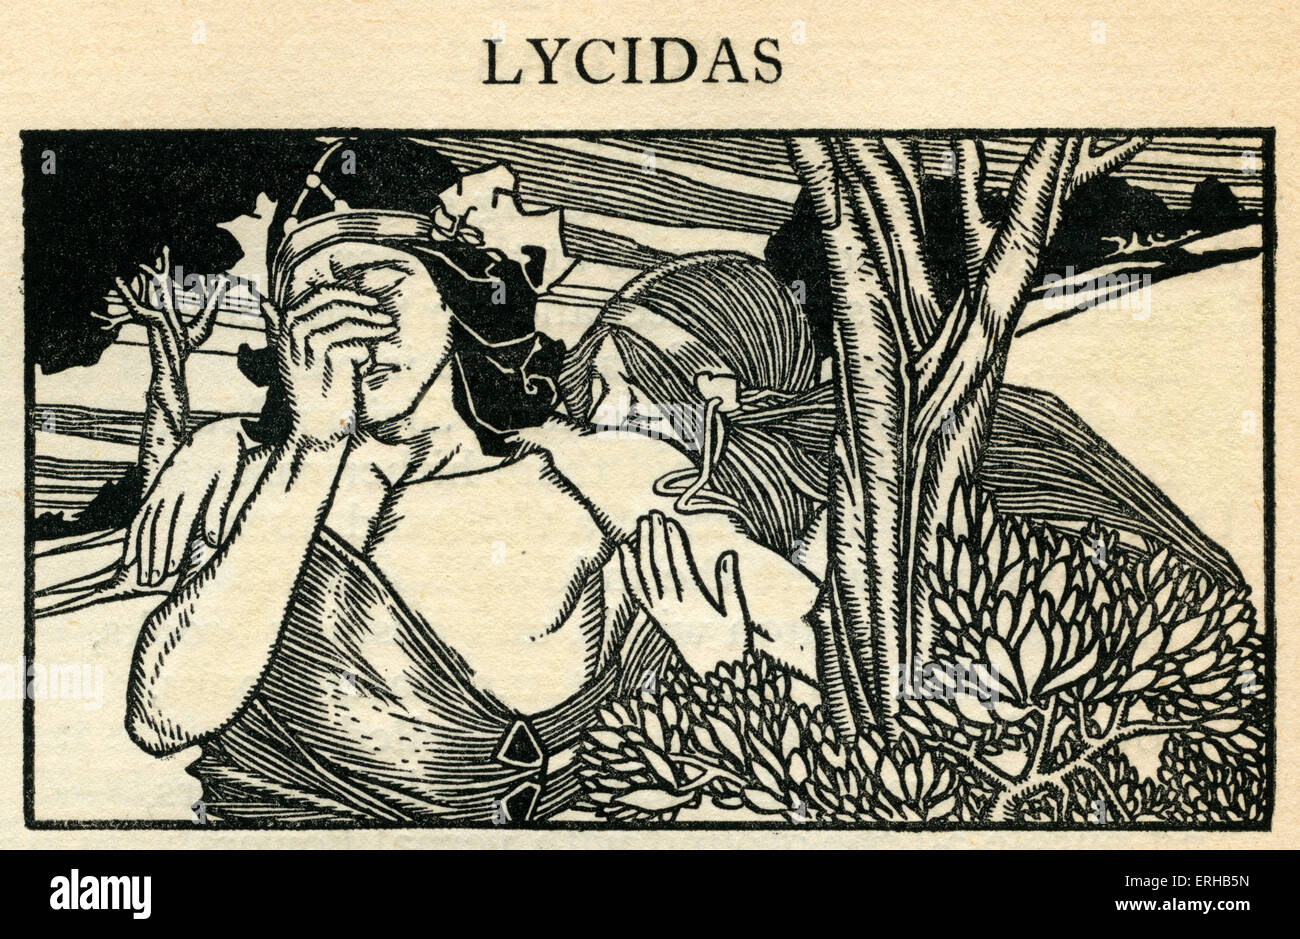 Lycidas par John Milton (1608-1674).Lycidas est une élégie pastorale publiée avec Milton's 1638 poèmes, dédié à la mémoire de Banque D'Images